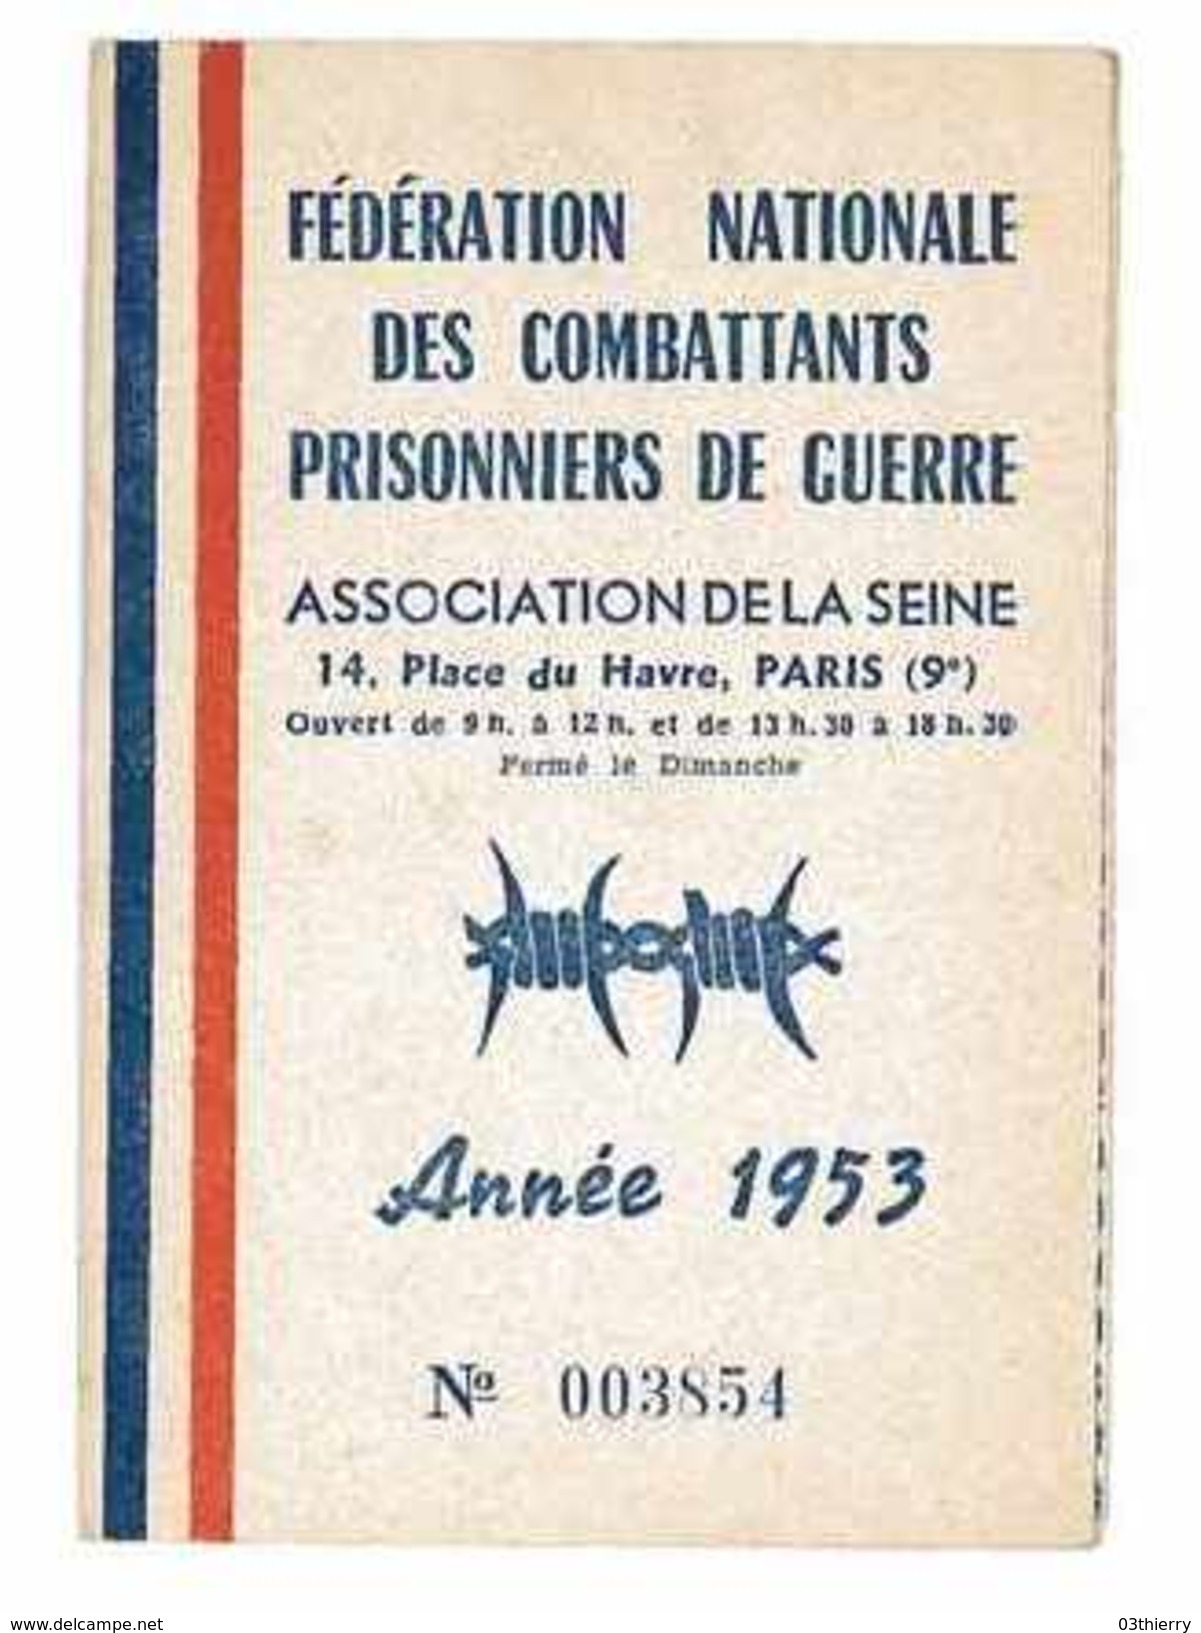 CARTE FEDERATION NATIONALE DES COMBATTANTS PRISONNIERS DE GUERRE 1953 DEPT DE LA SEINE 2 VIGNETTES - Documents